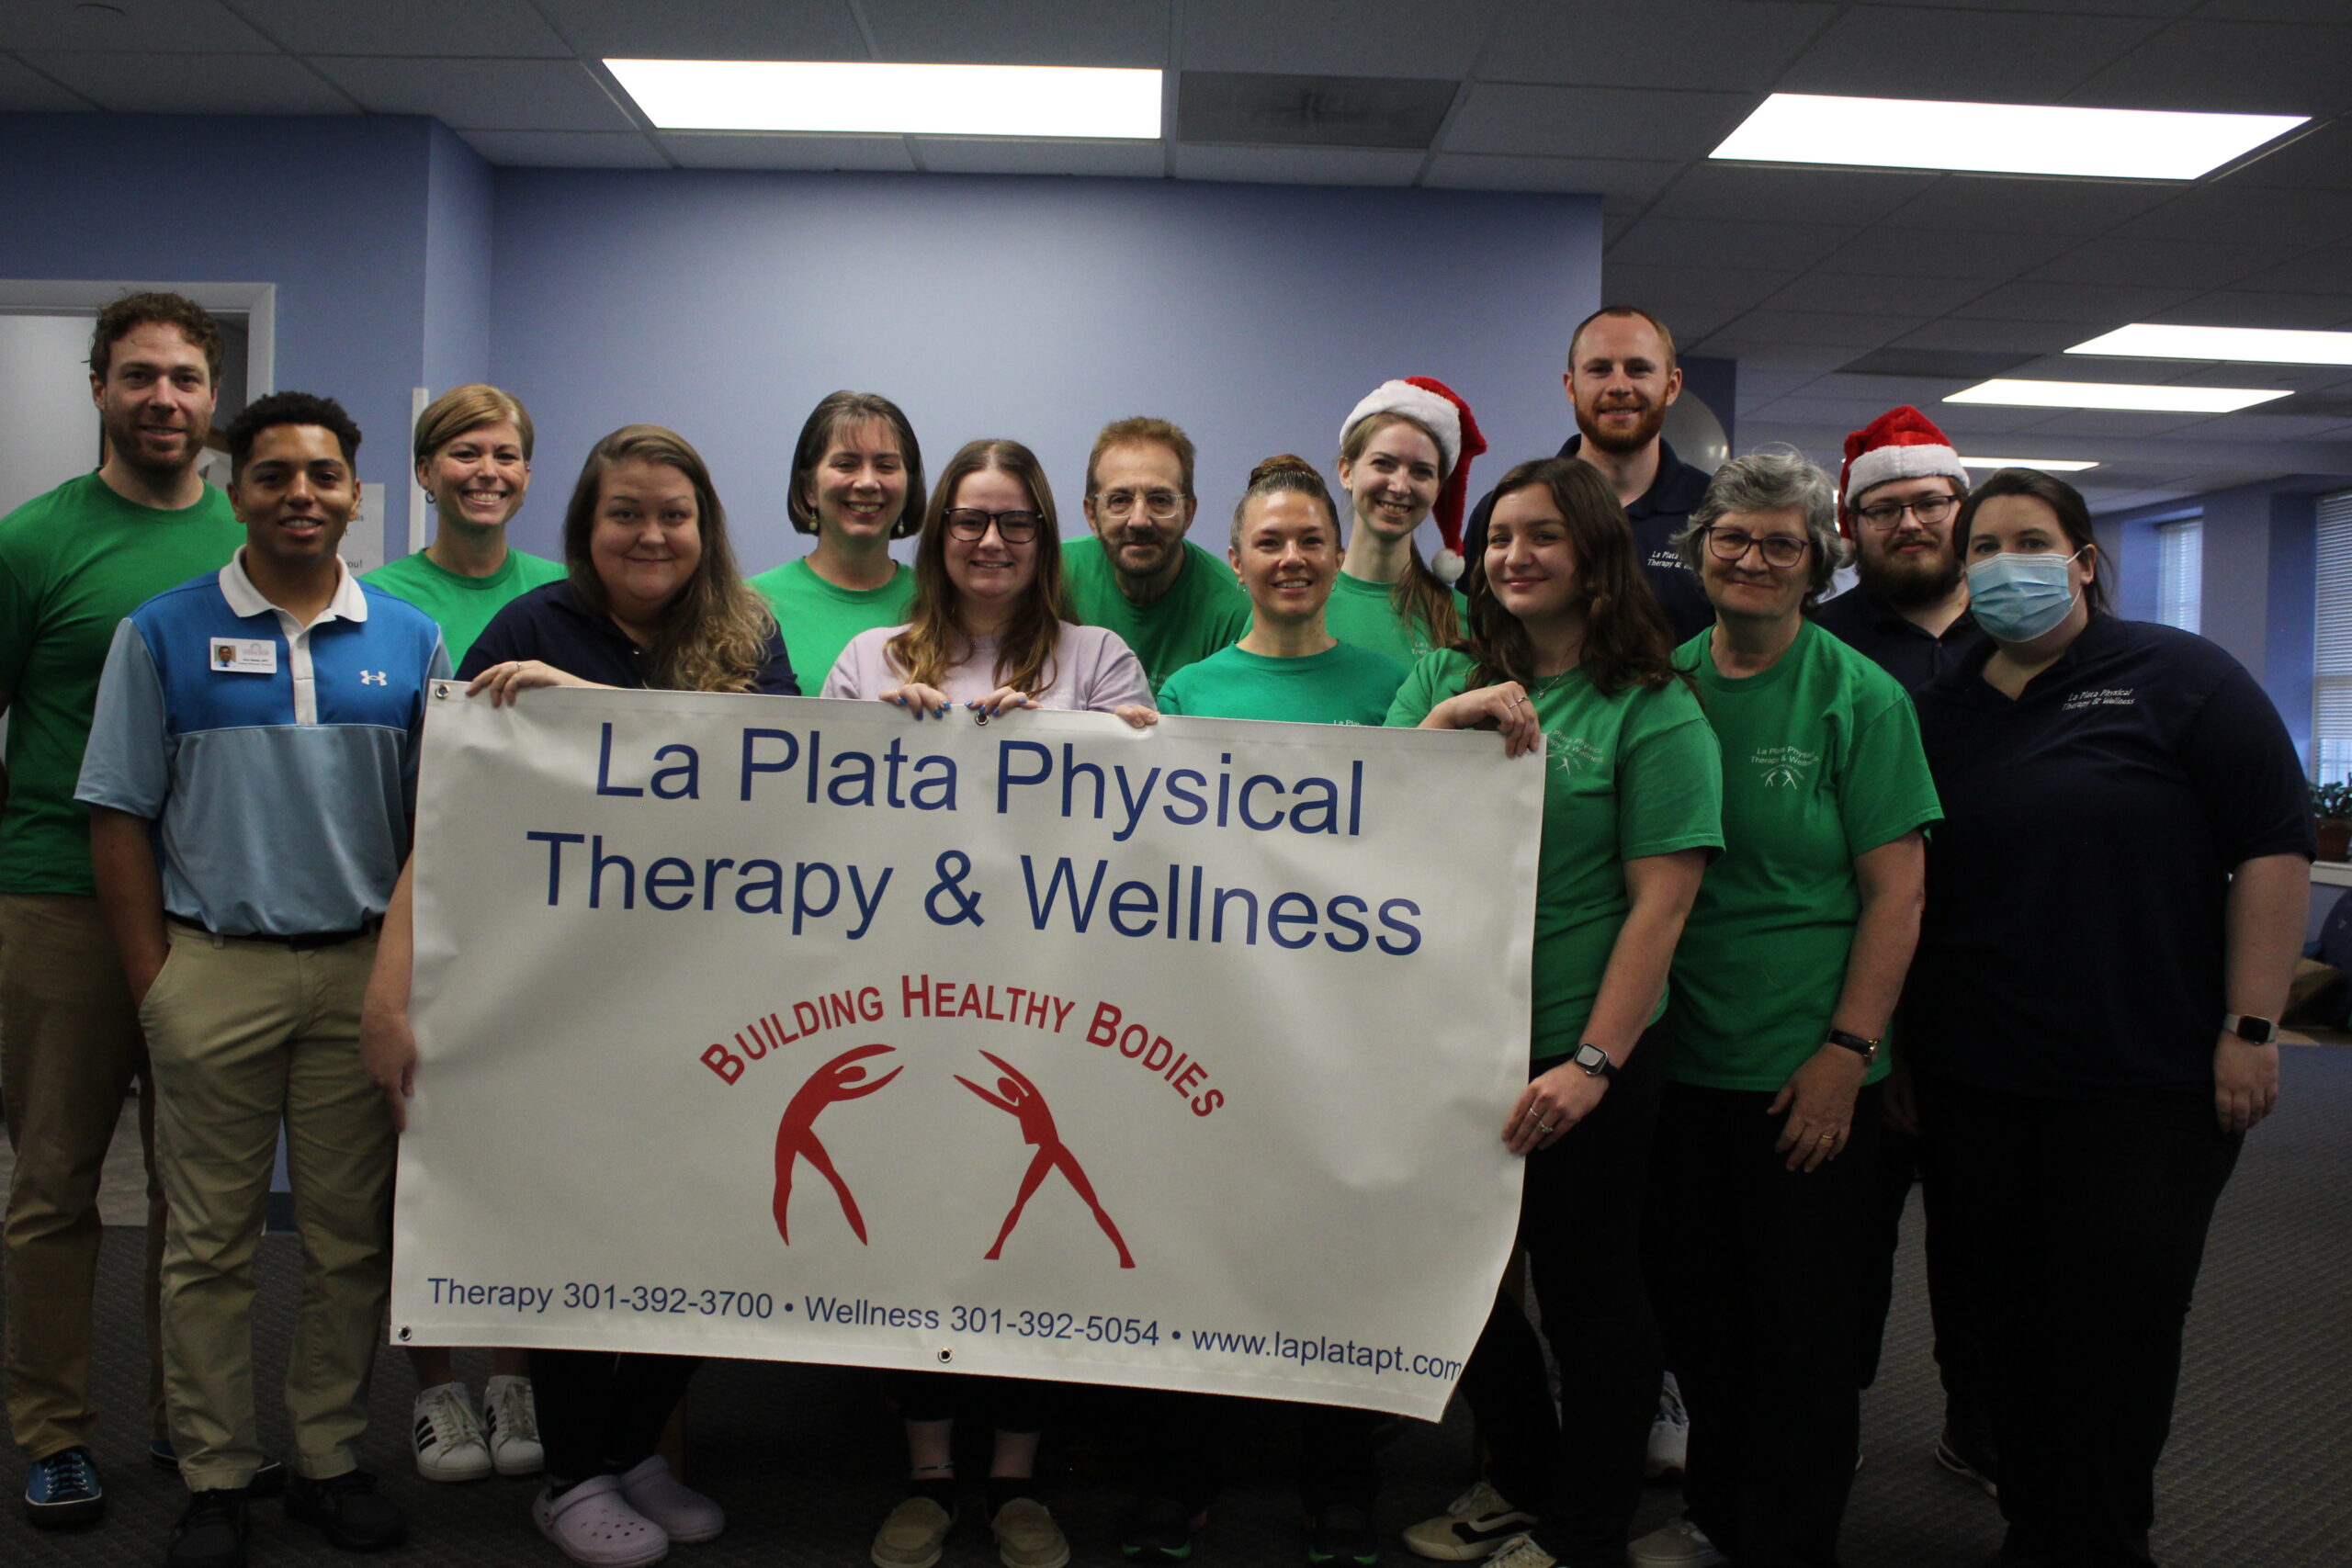 La Plata Physical Therapy & Wellness Staff in La Plata, MD